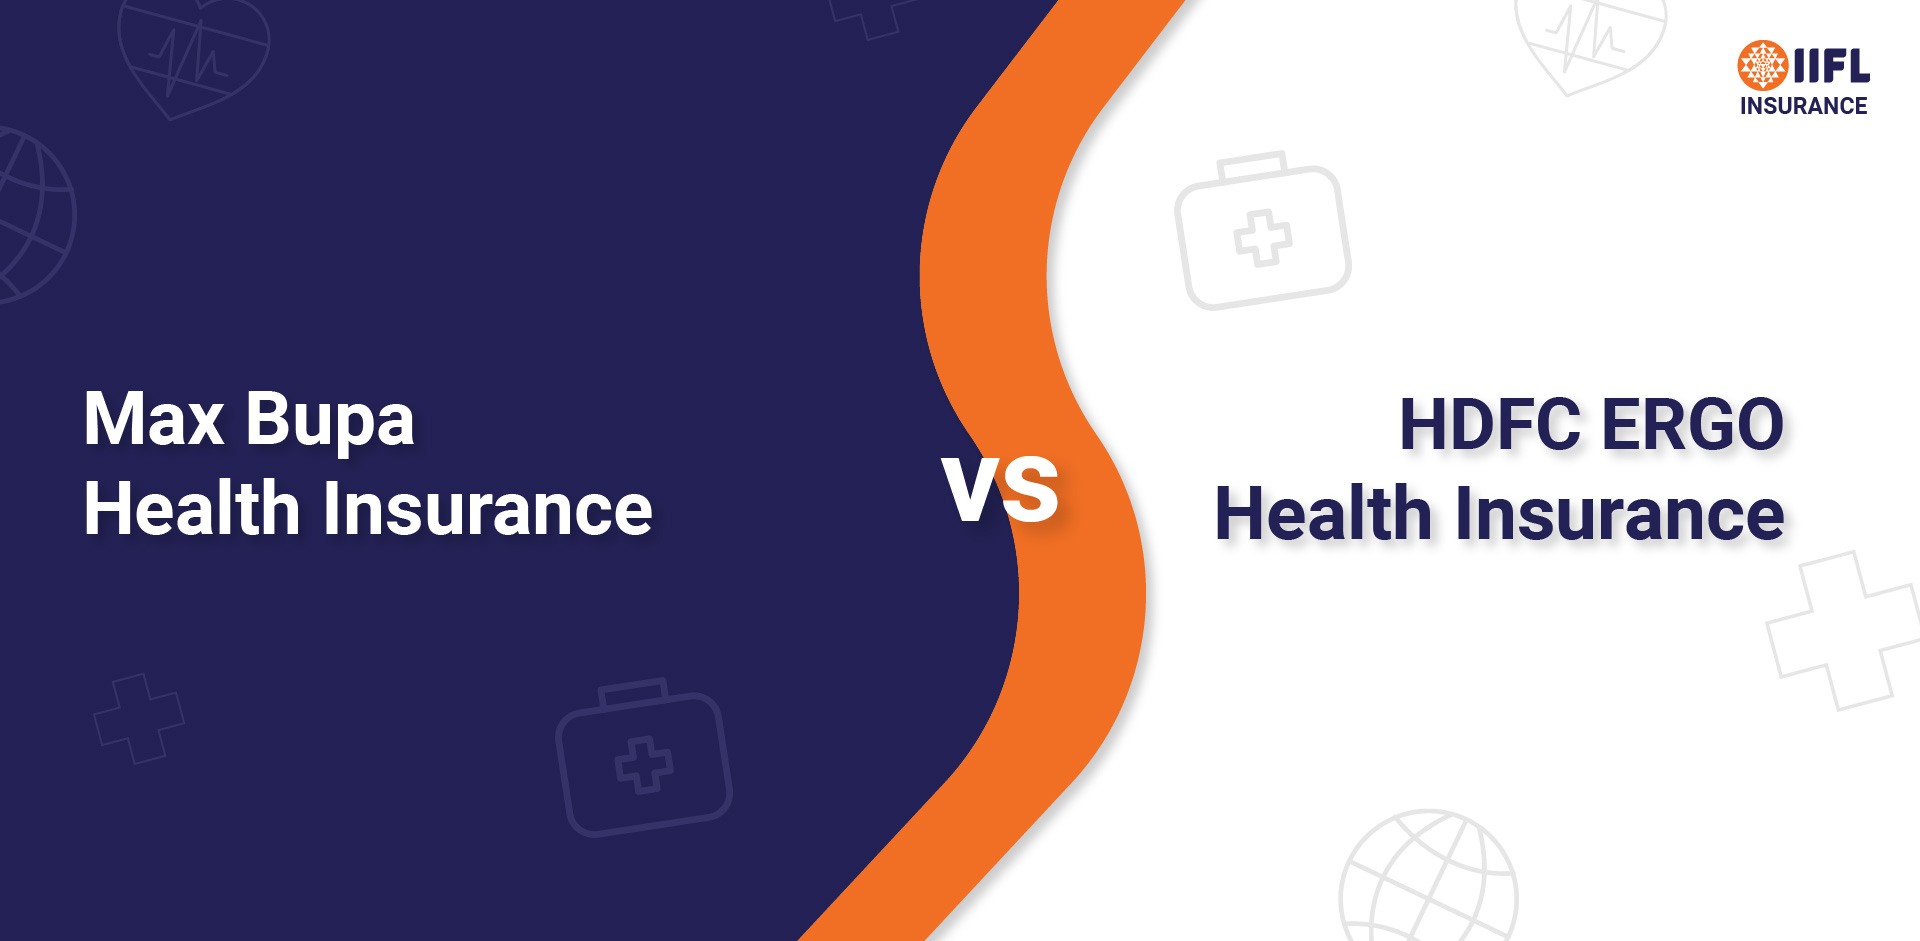 Niva Bupa (Max Bupa) Health Insurance vs HDFC ERGO Health Insurance